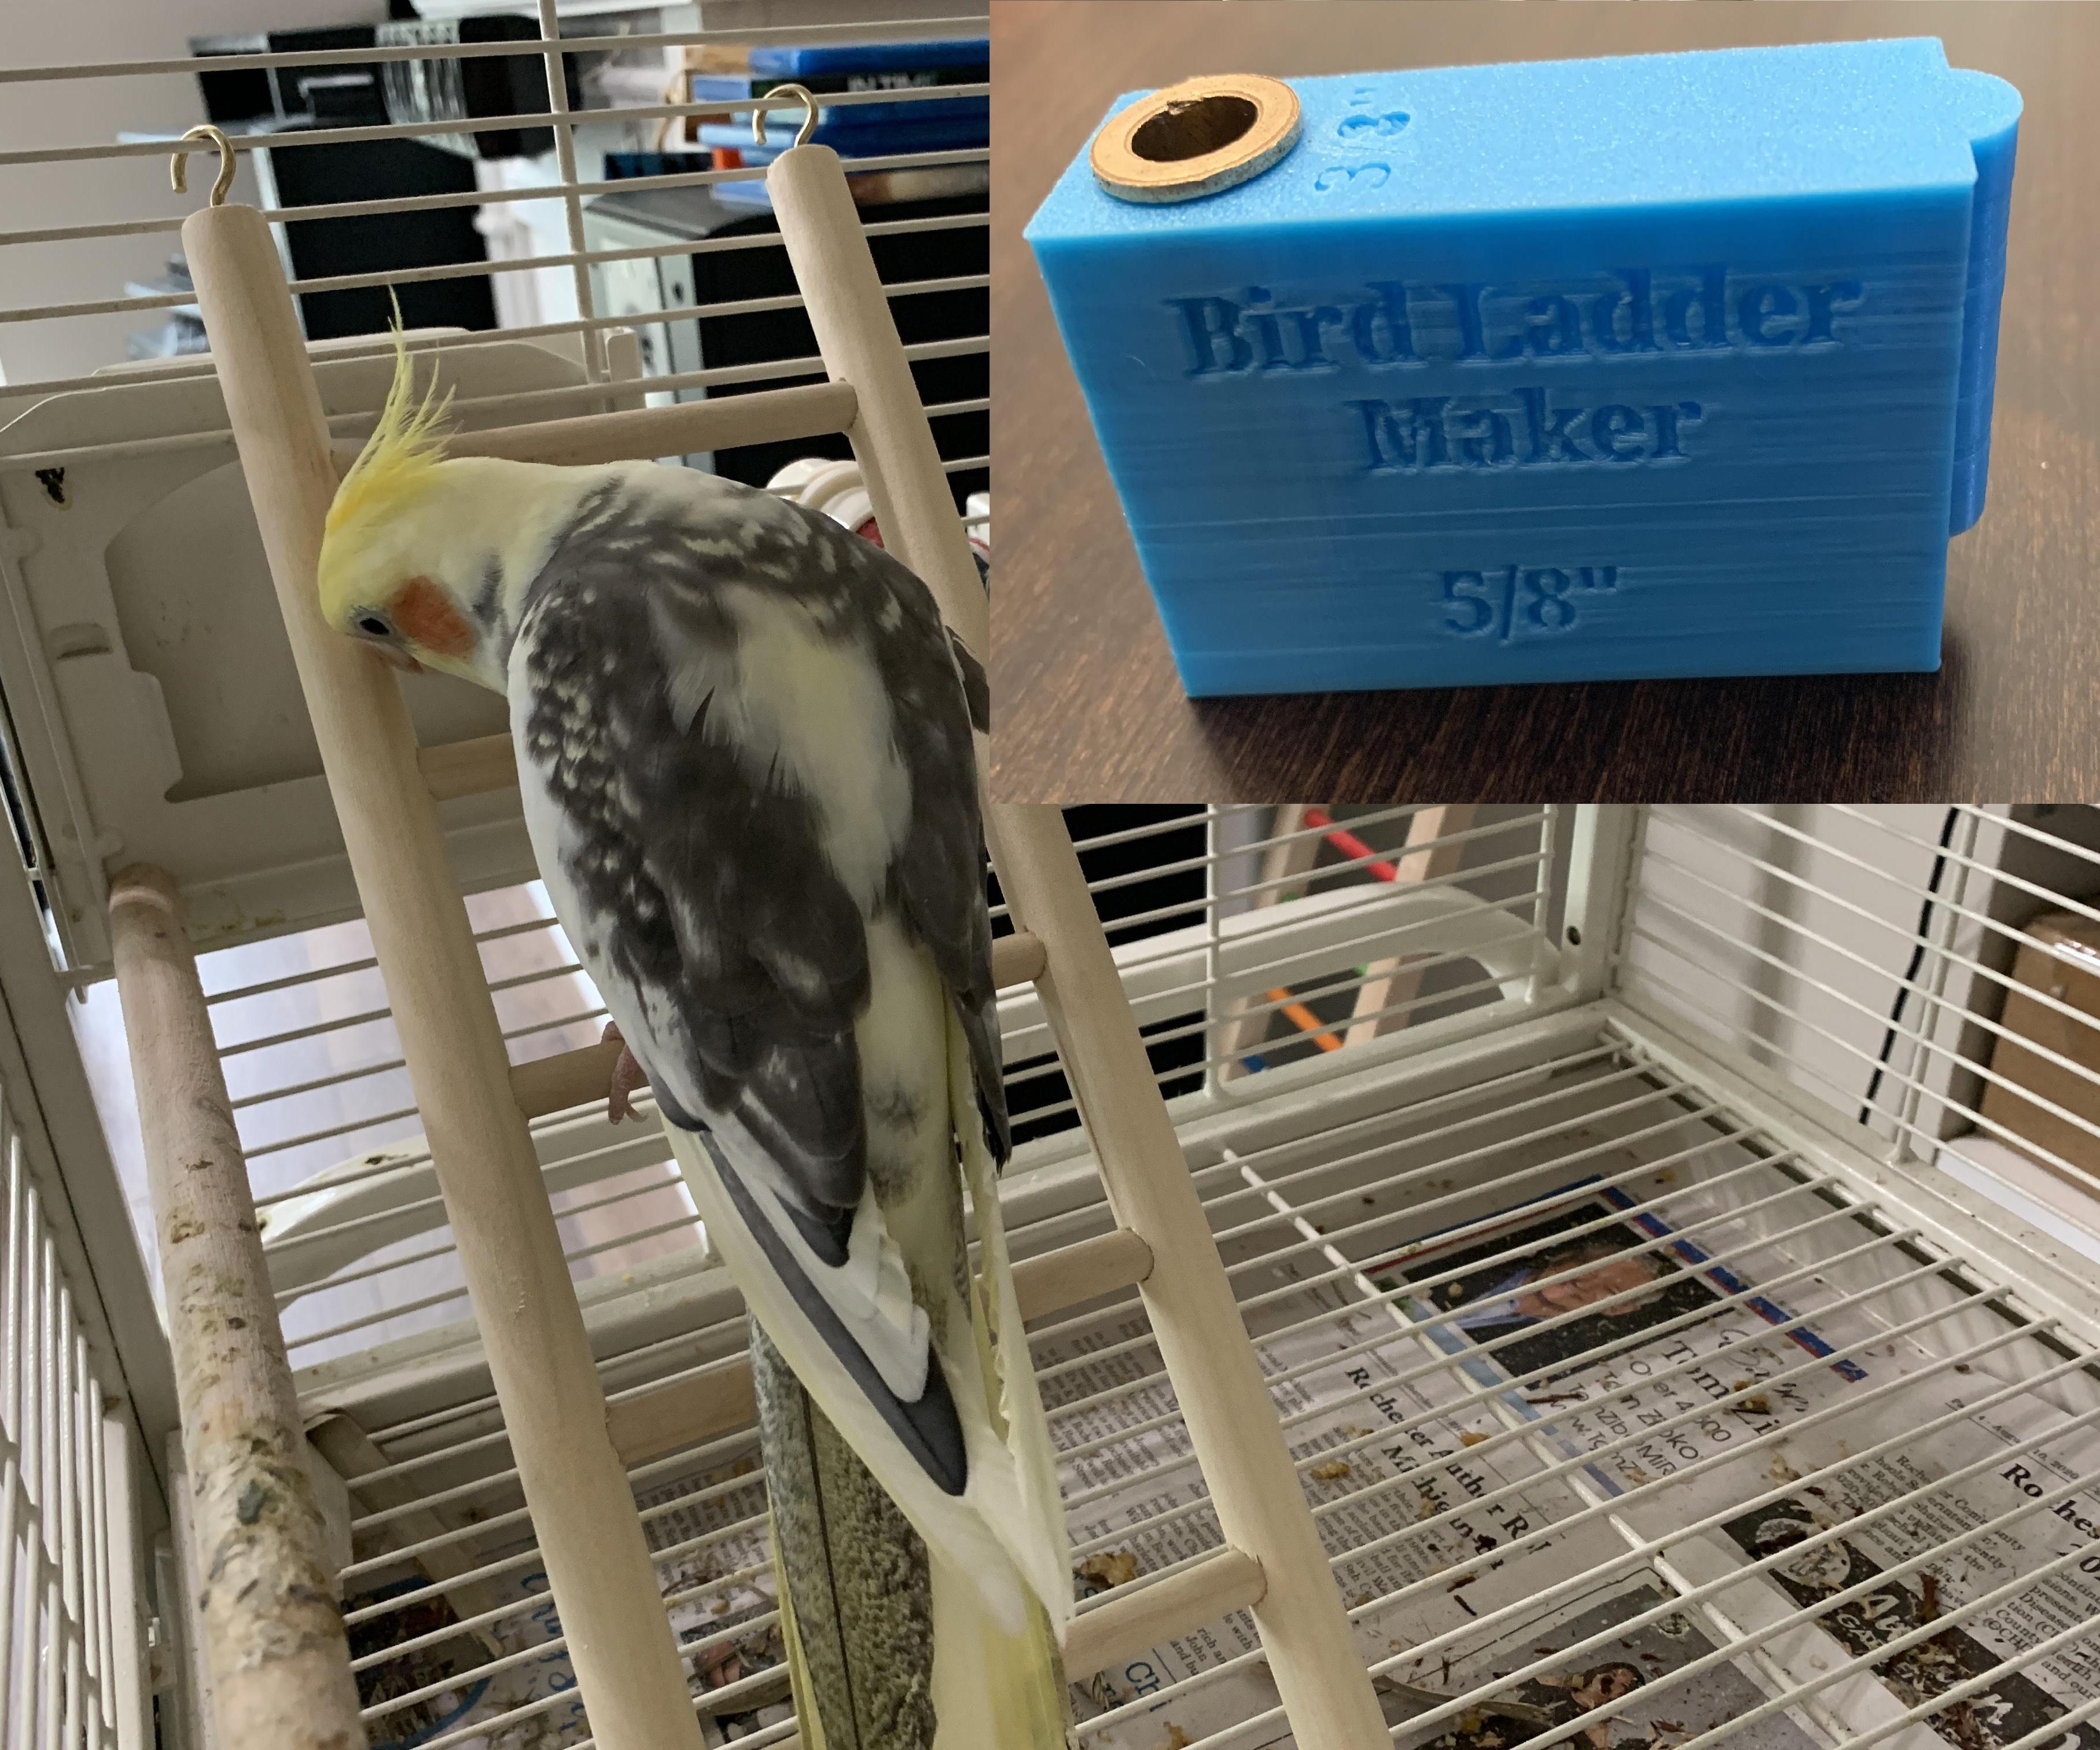 Bird Ladder Maker